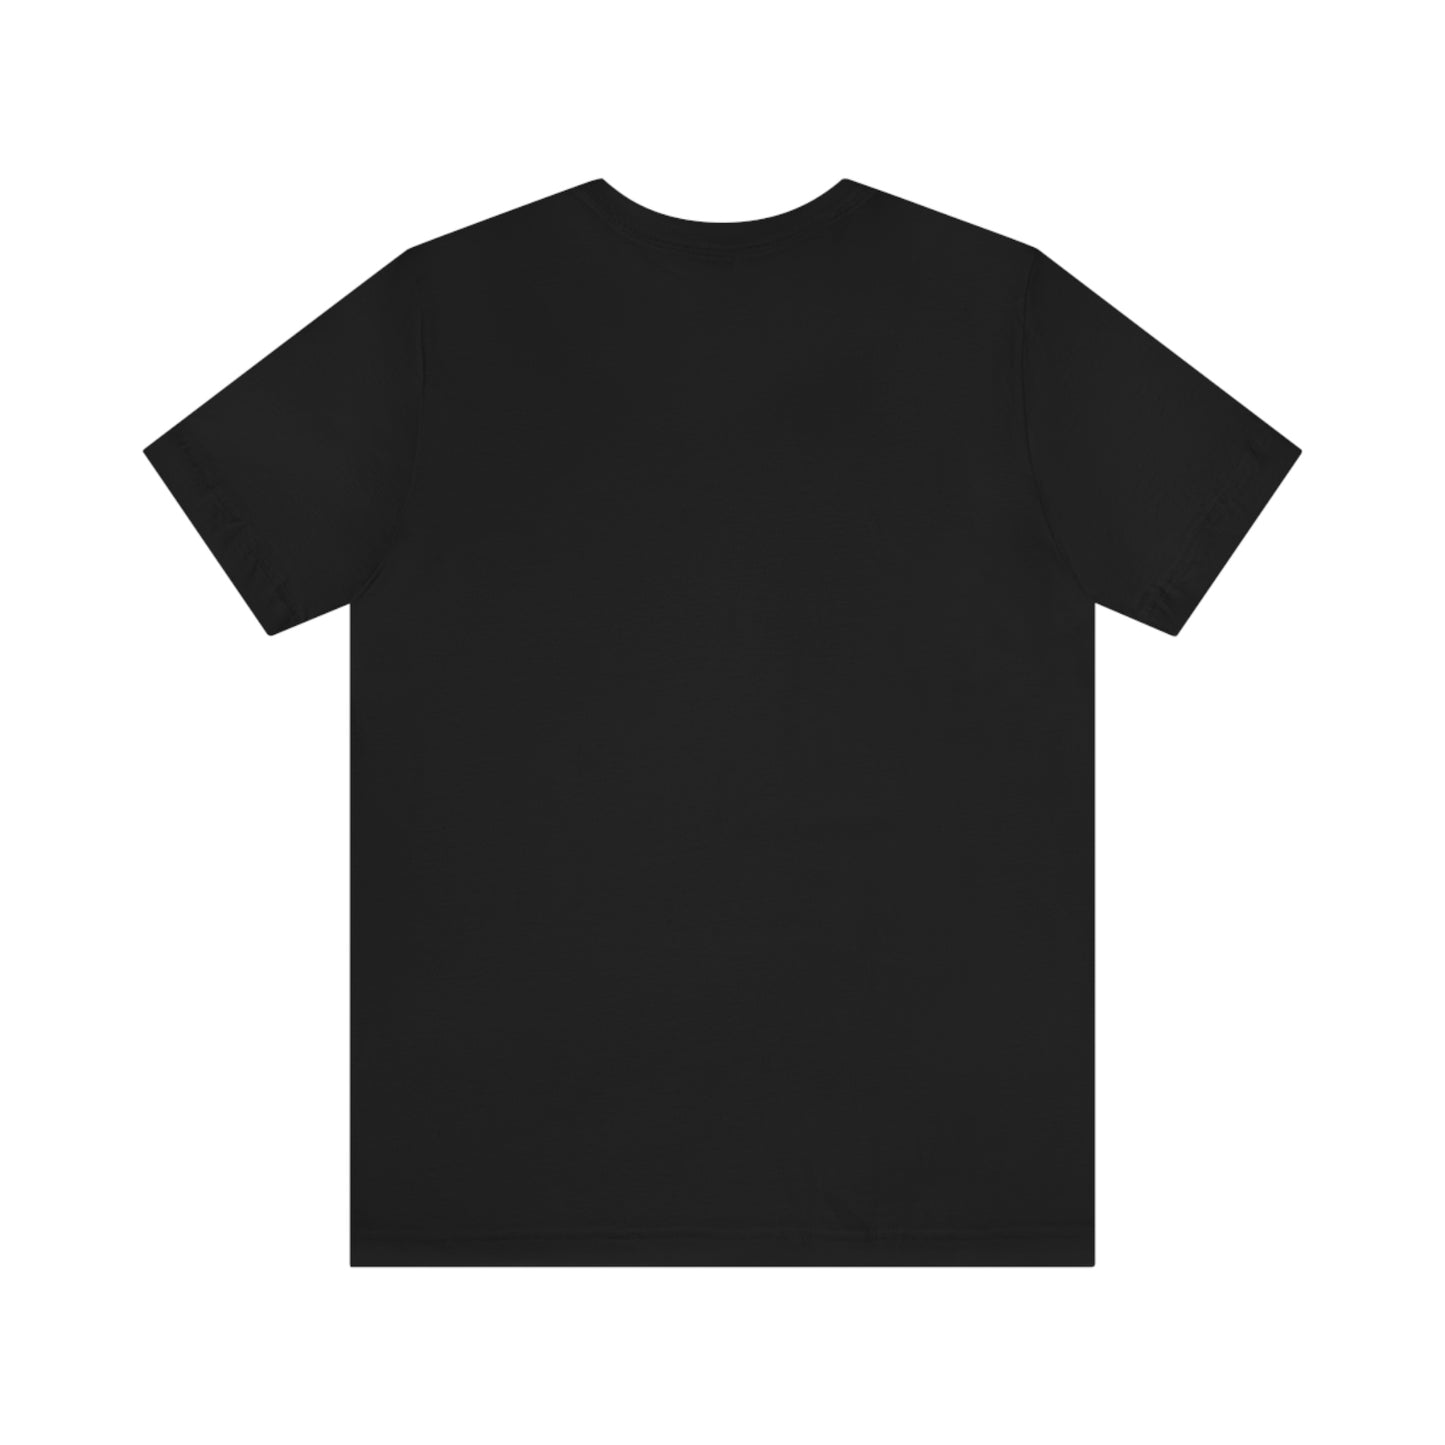 Black T-Shirt plain back